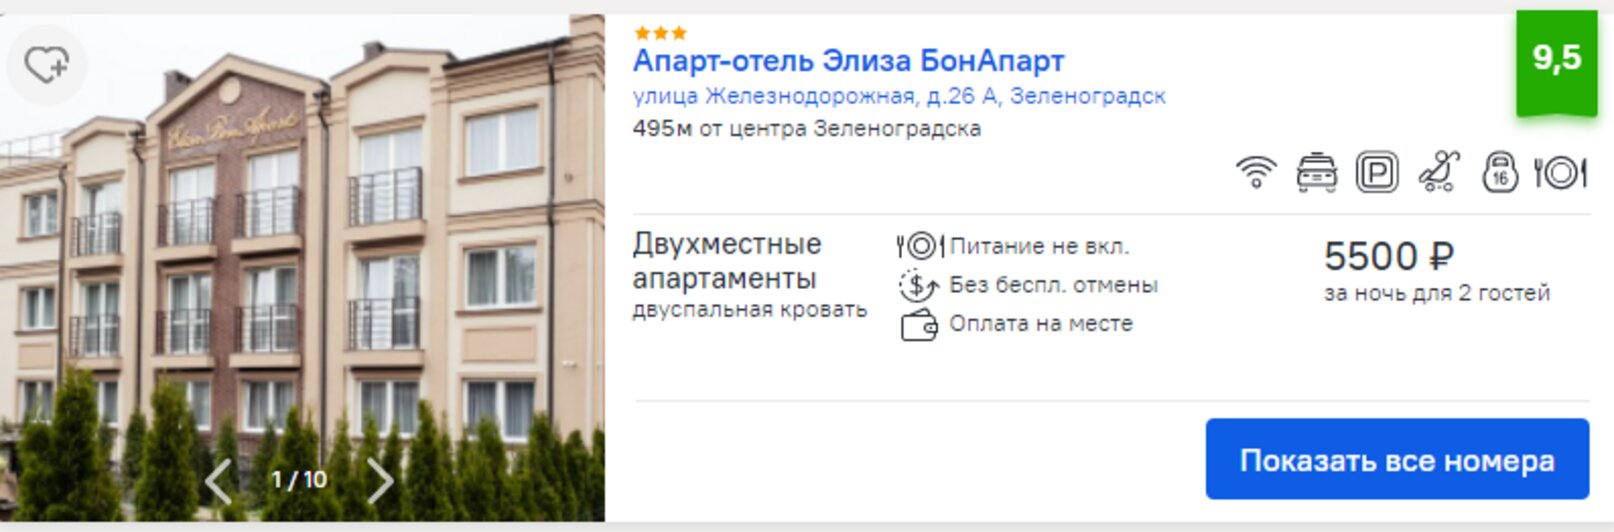 стоимость отелей в Зеленоградске | скриншоты с сервиса ostrovok.ru